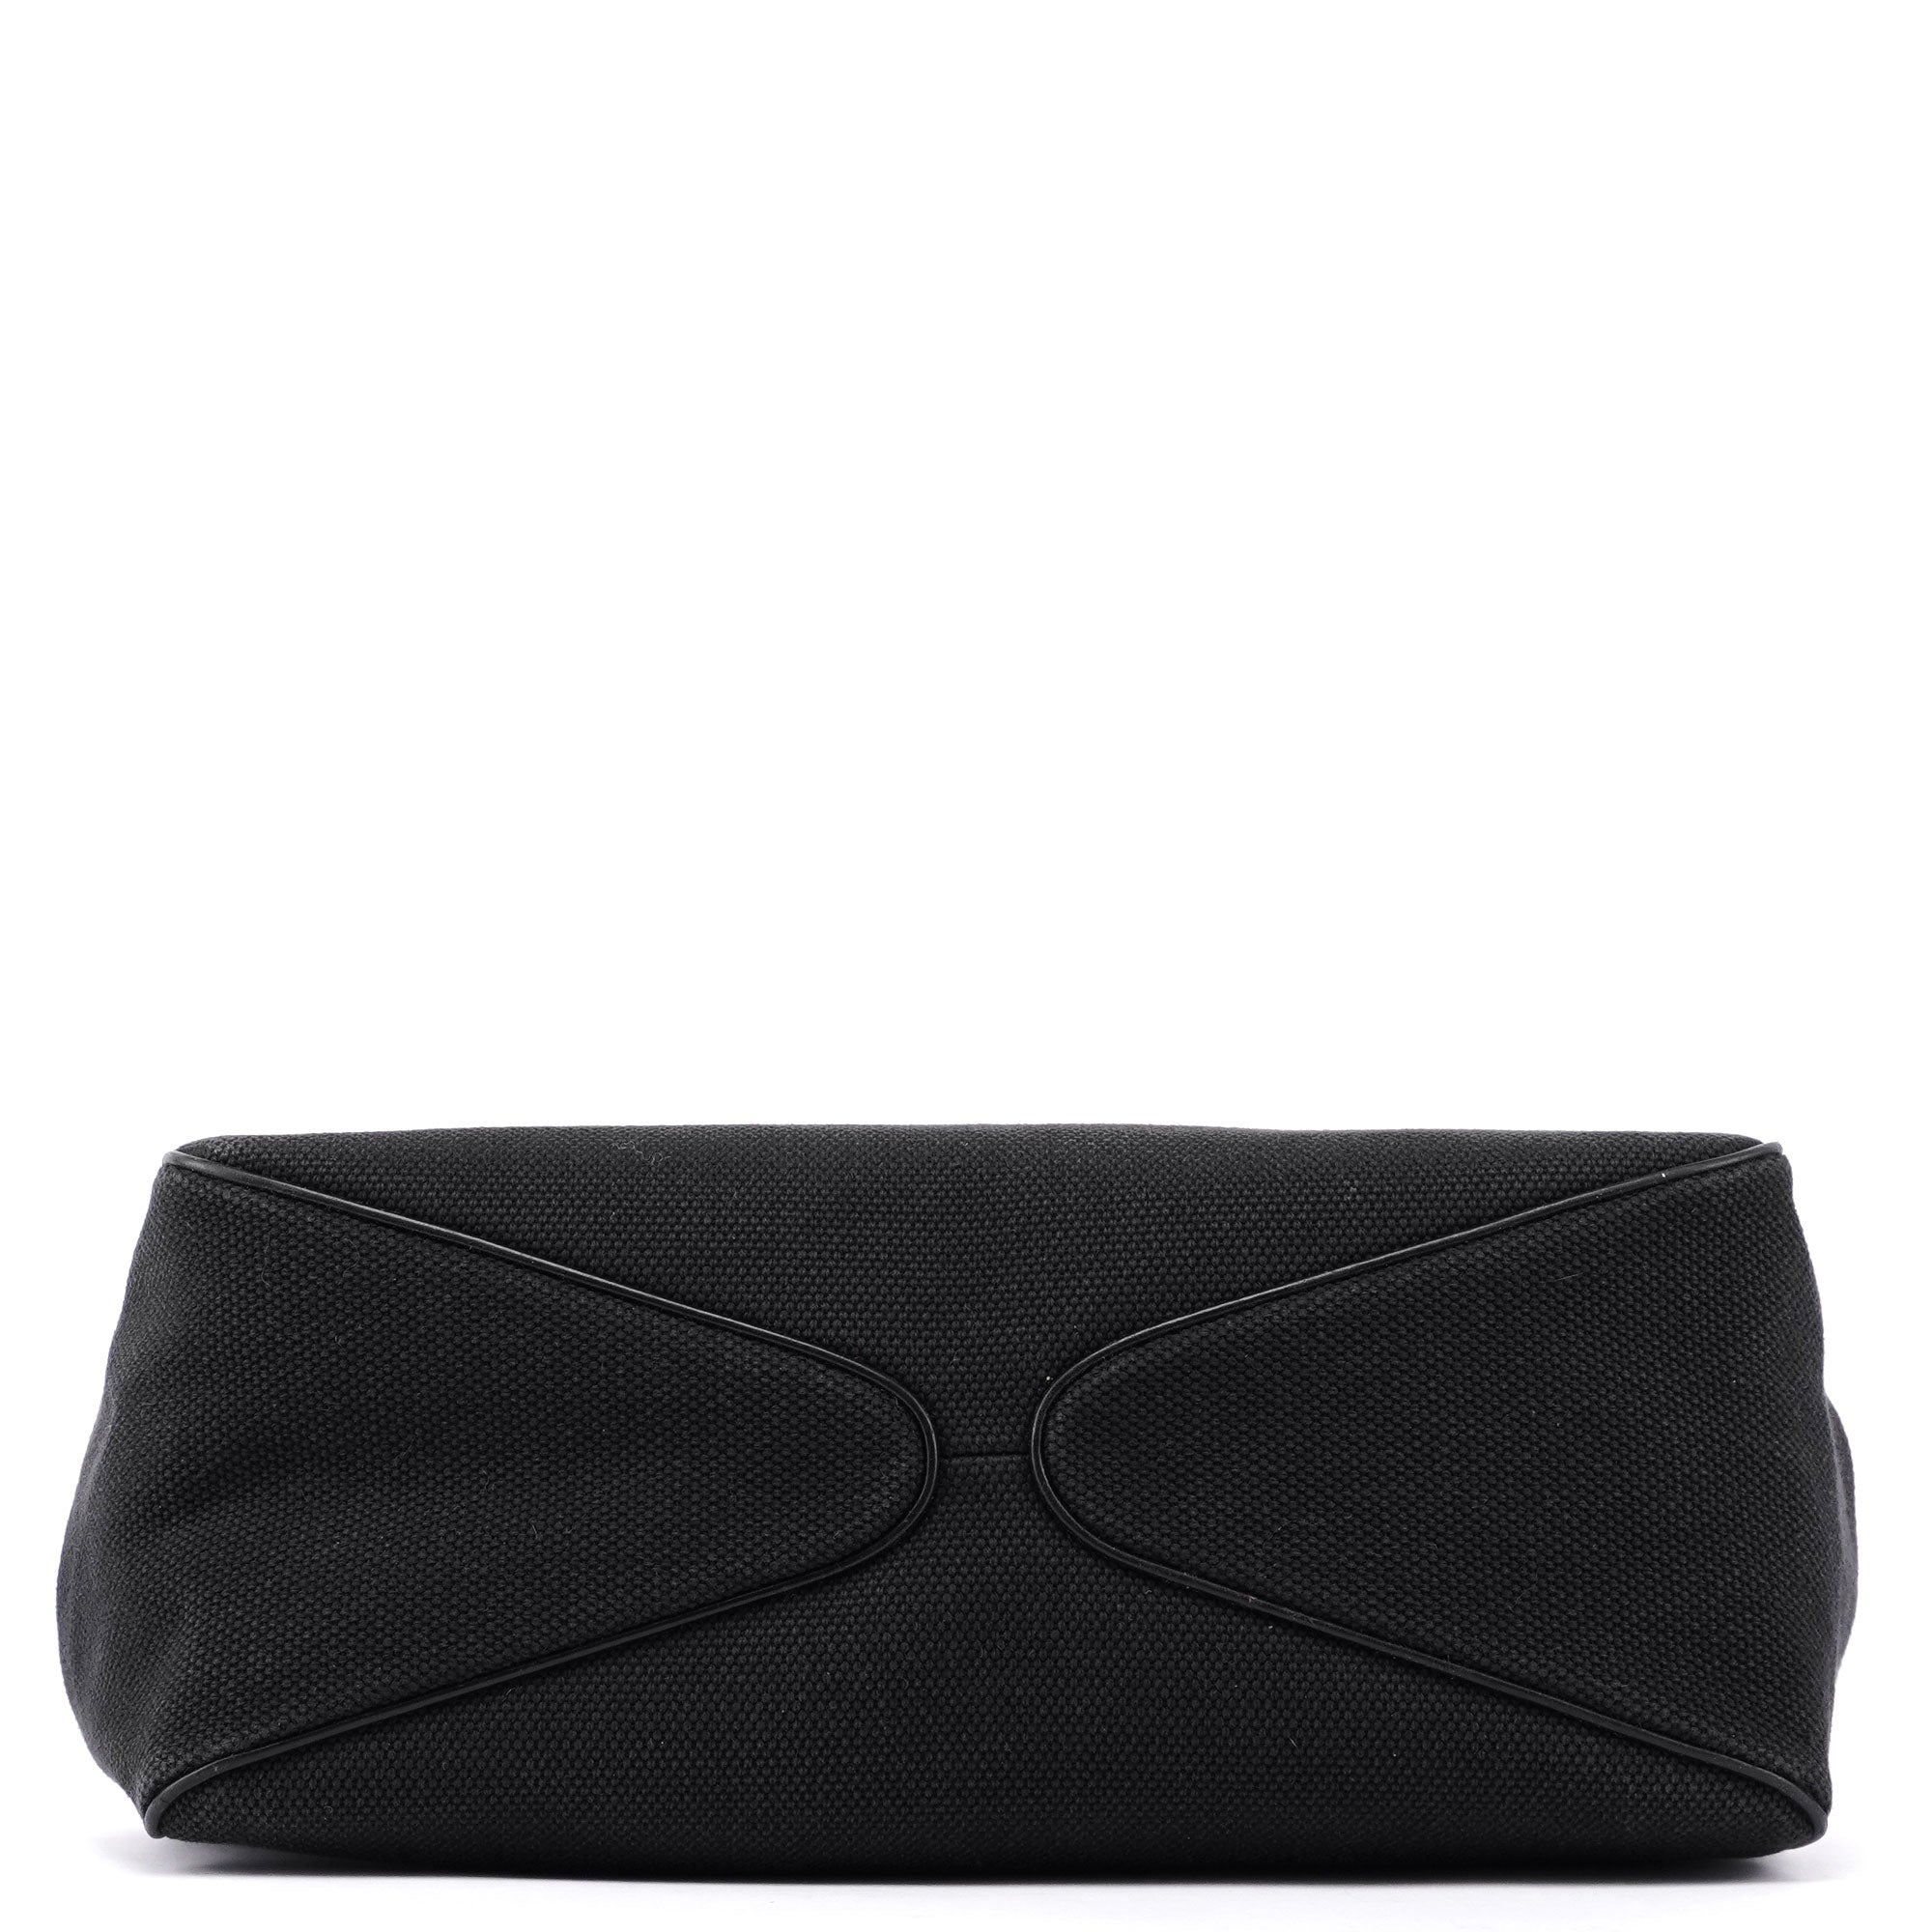 Gucci Black Canvas Wood Handle Shoulder Bag